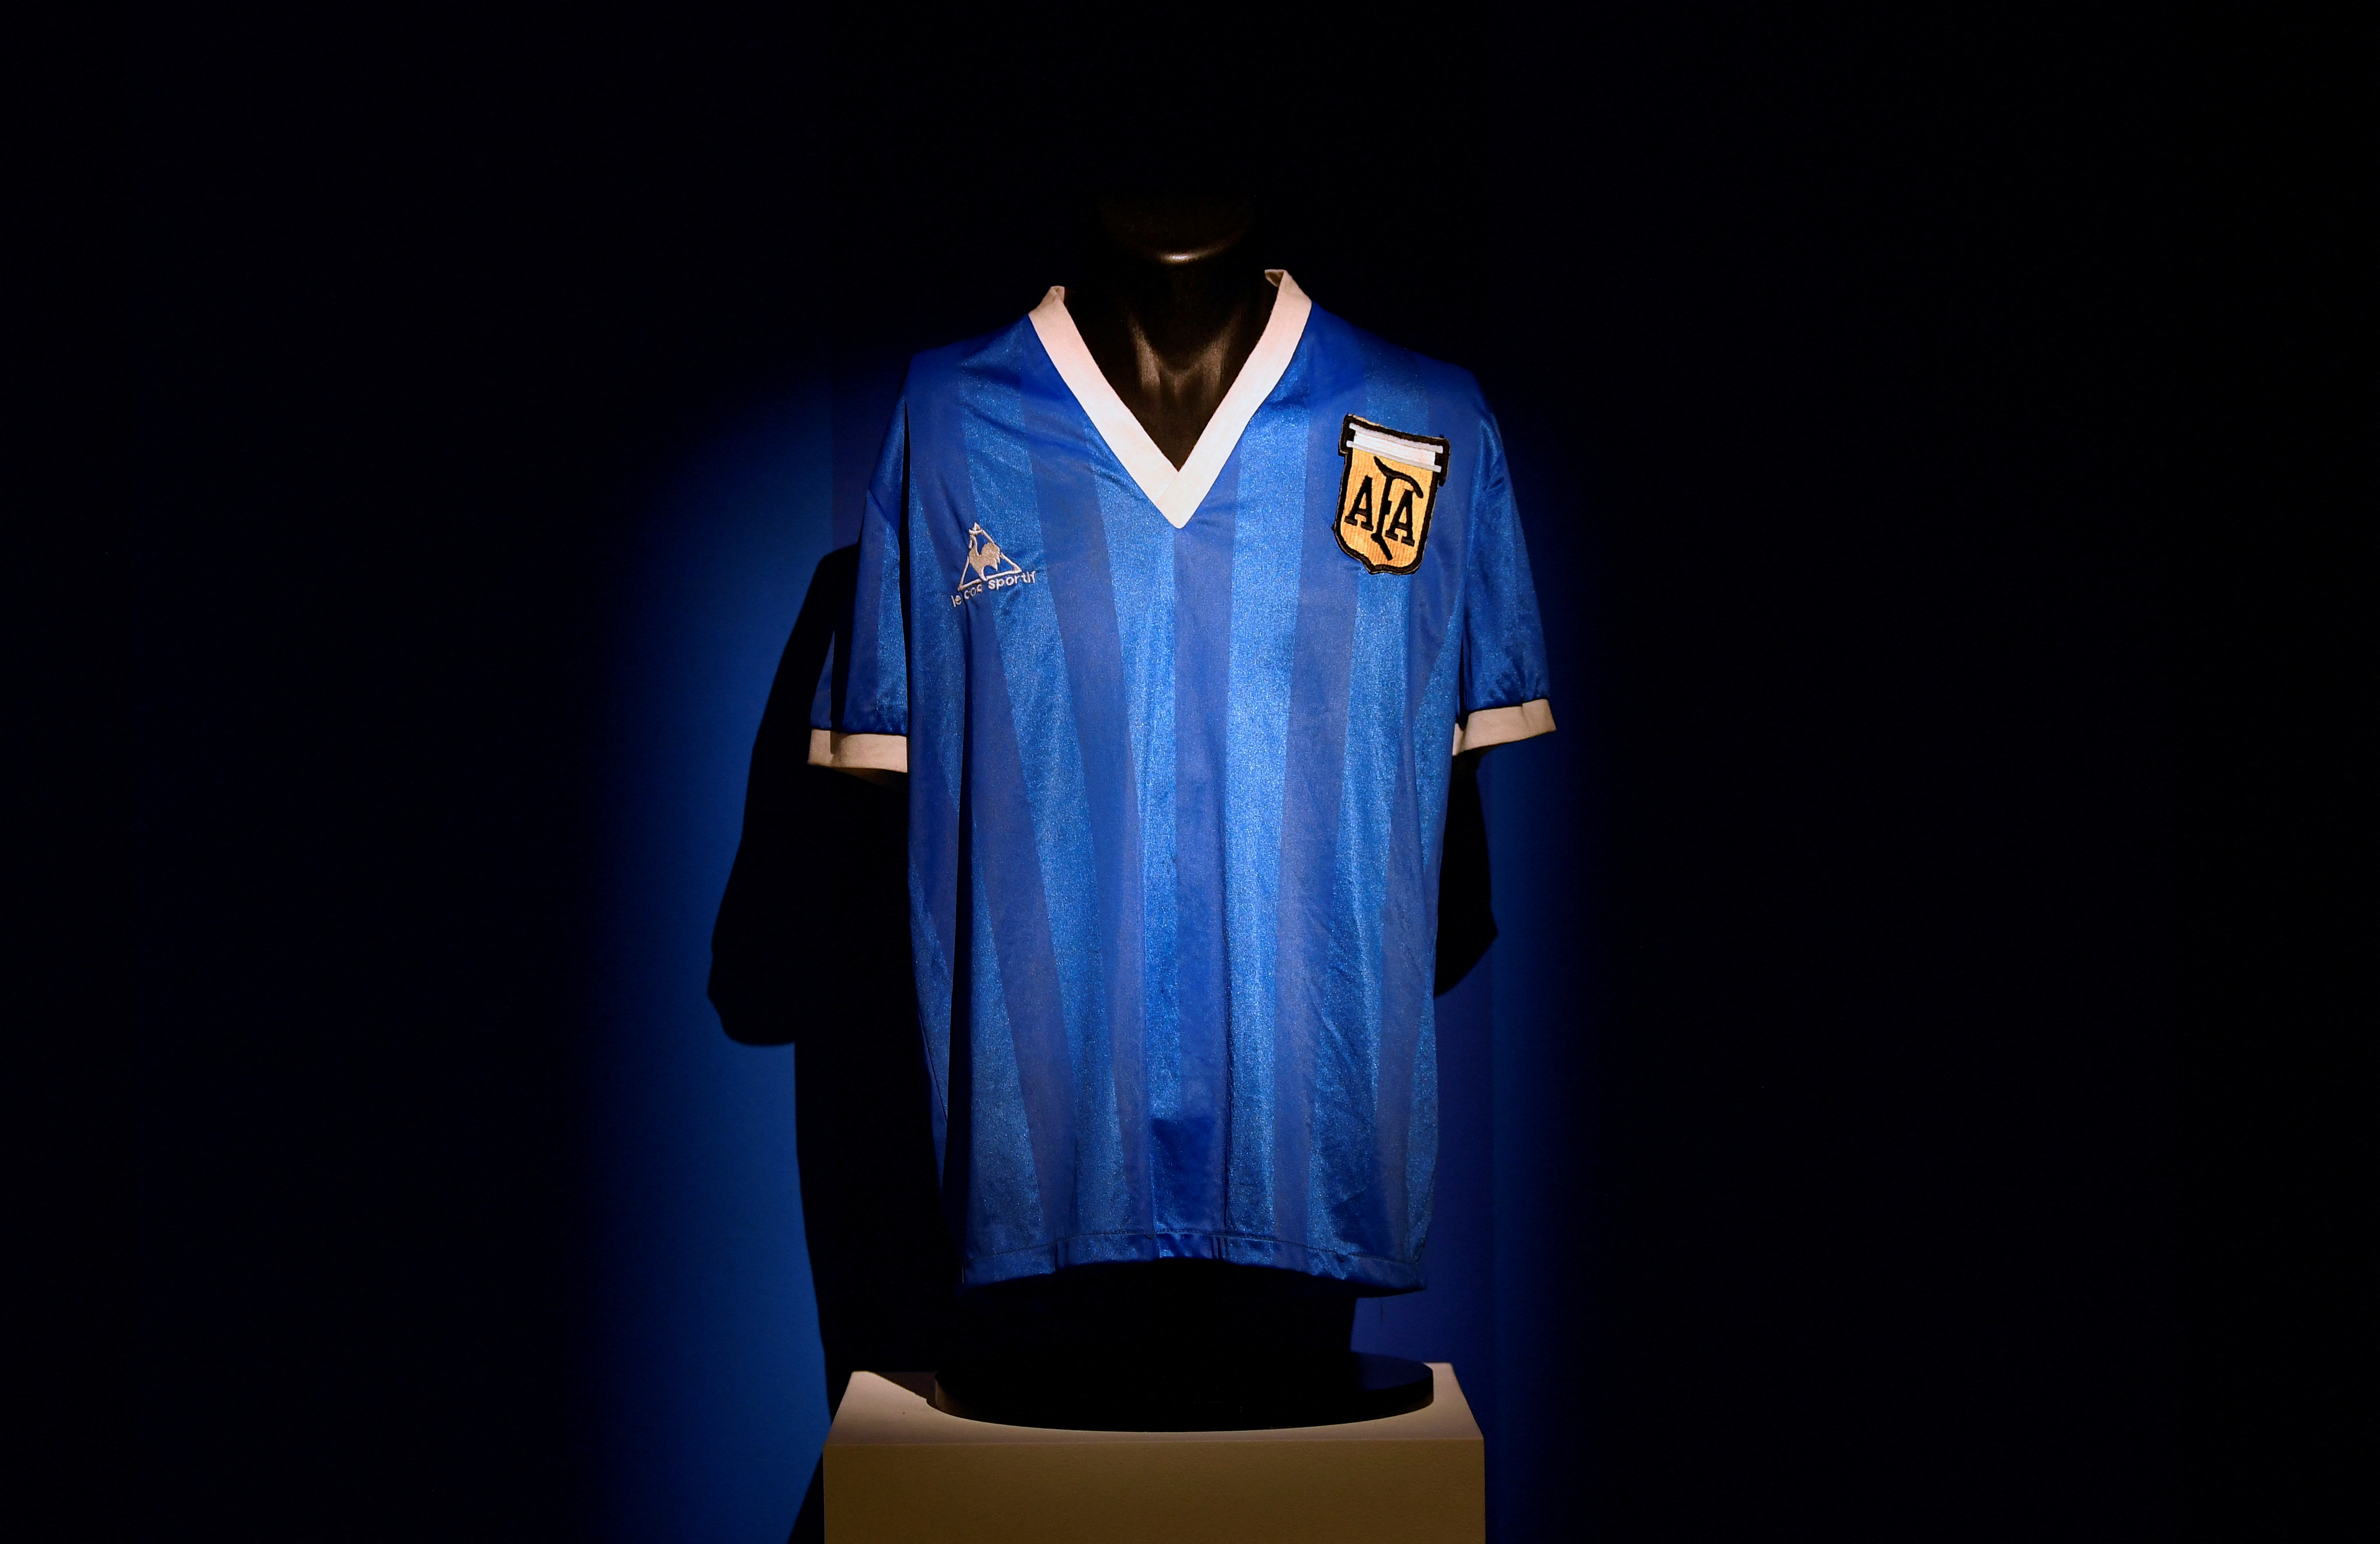 La storica maglia alternativa della squadra argentina che ha utilizzato contro l'Inghilterra in Messico 86 (REUTERS / Toby Melville)